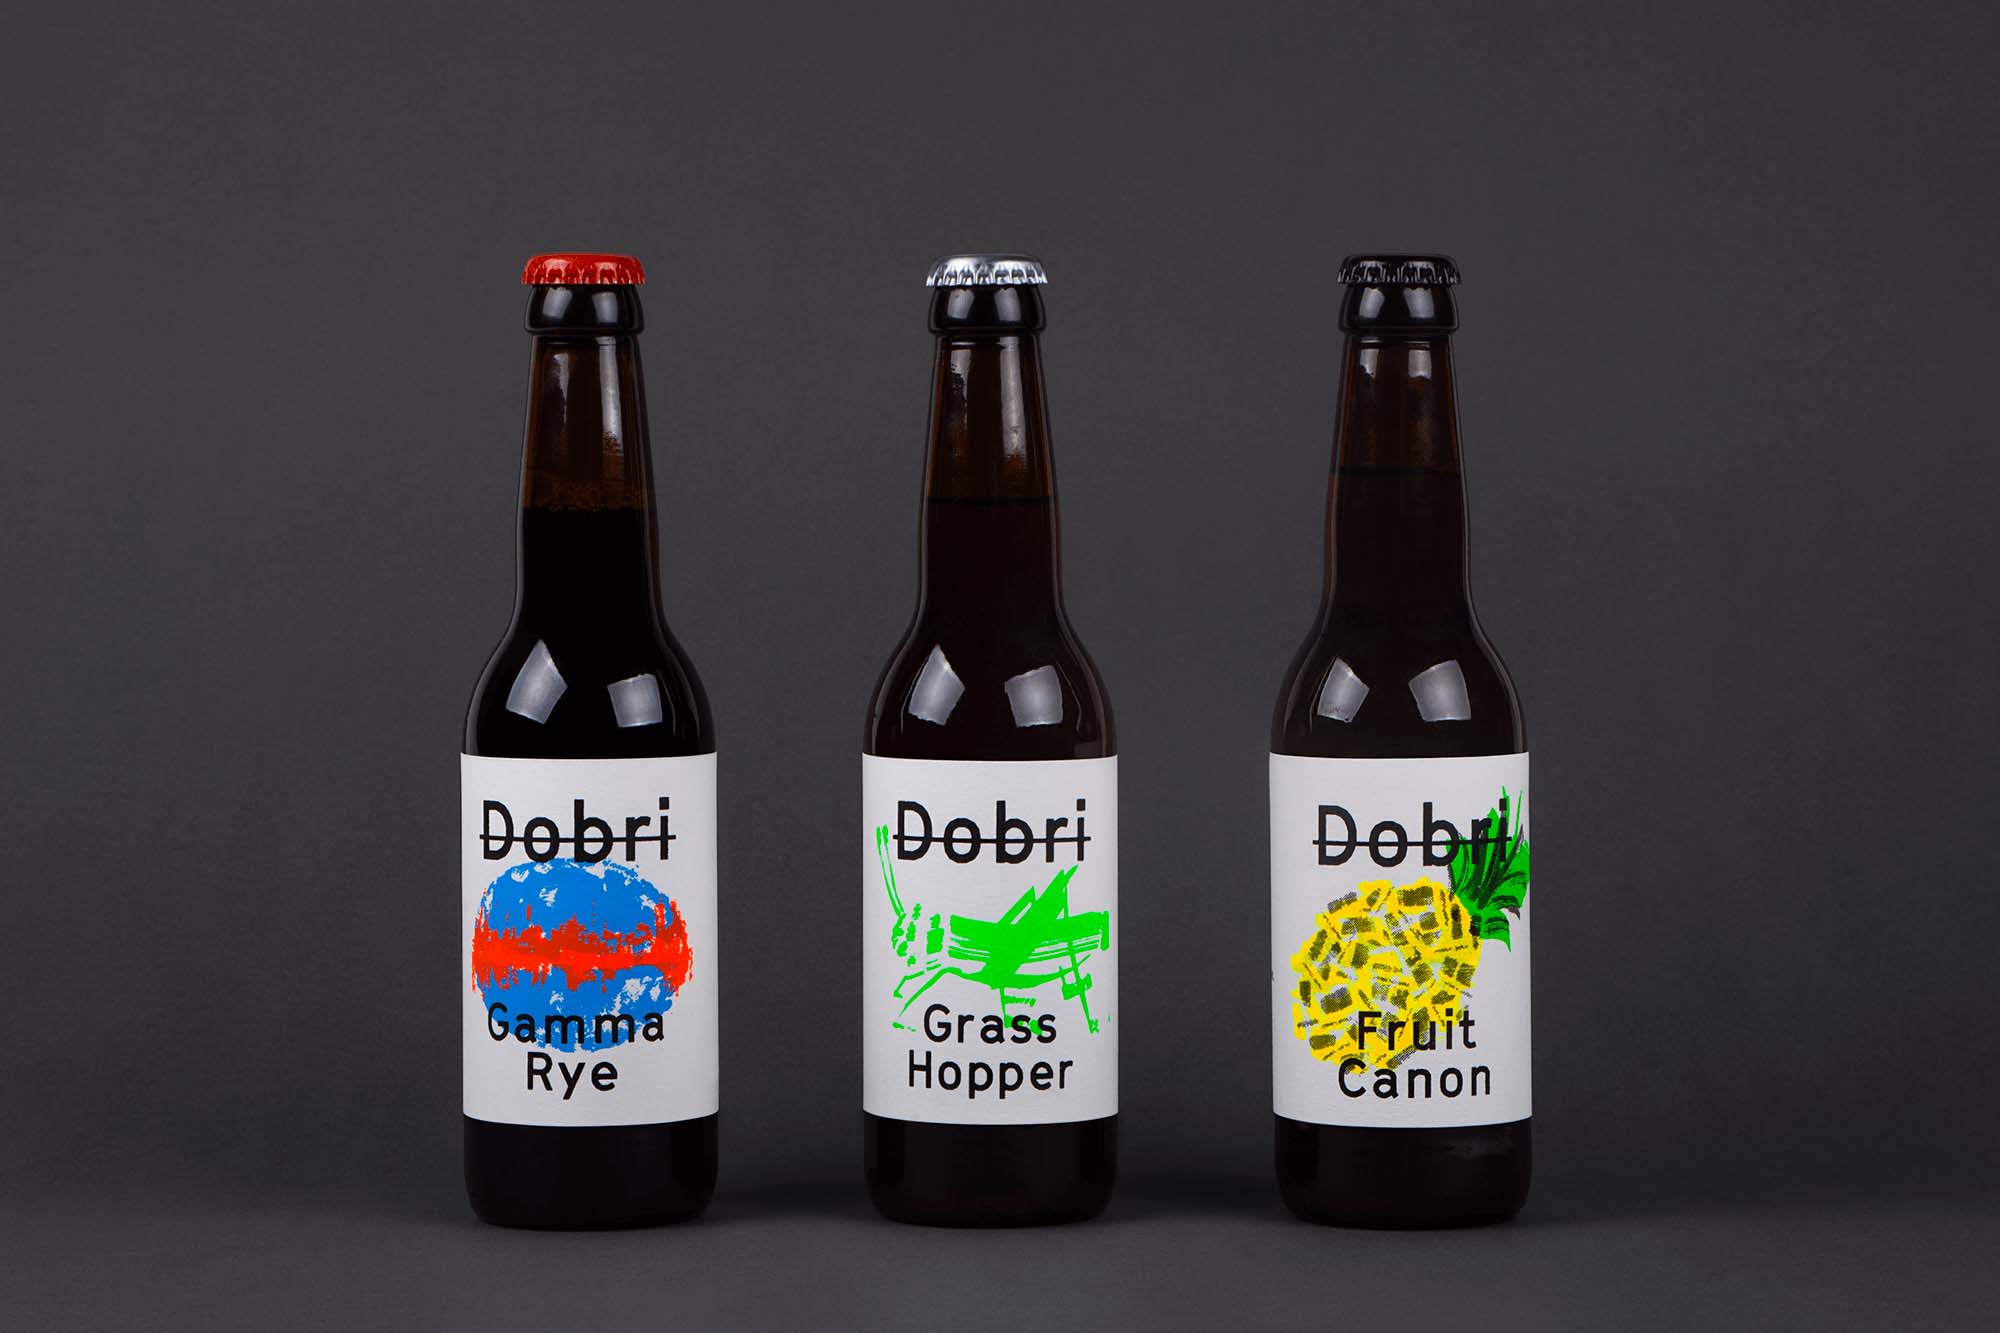 荧光涂鸦风格Dobri啤酒包装设计